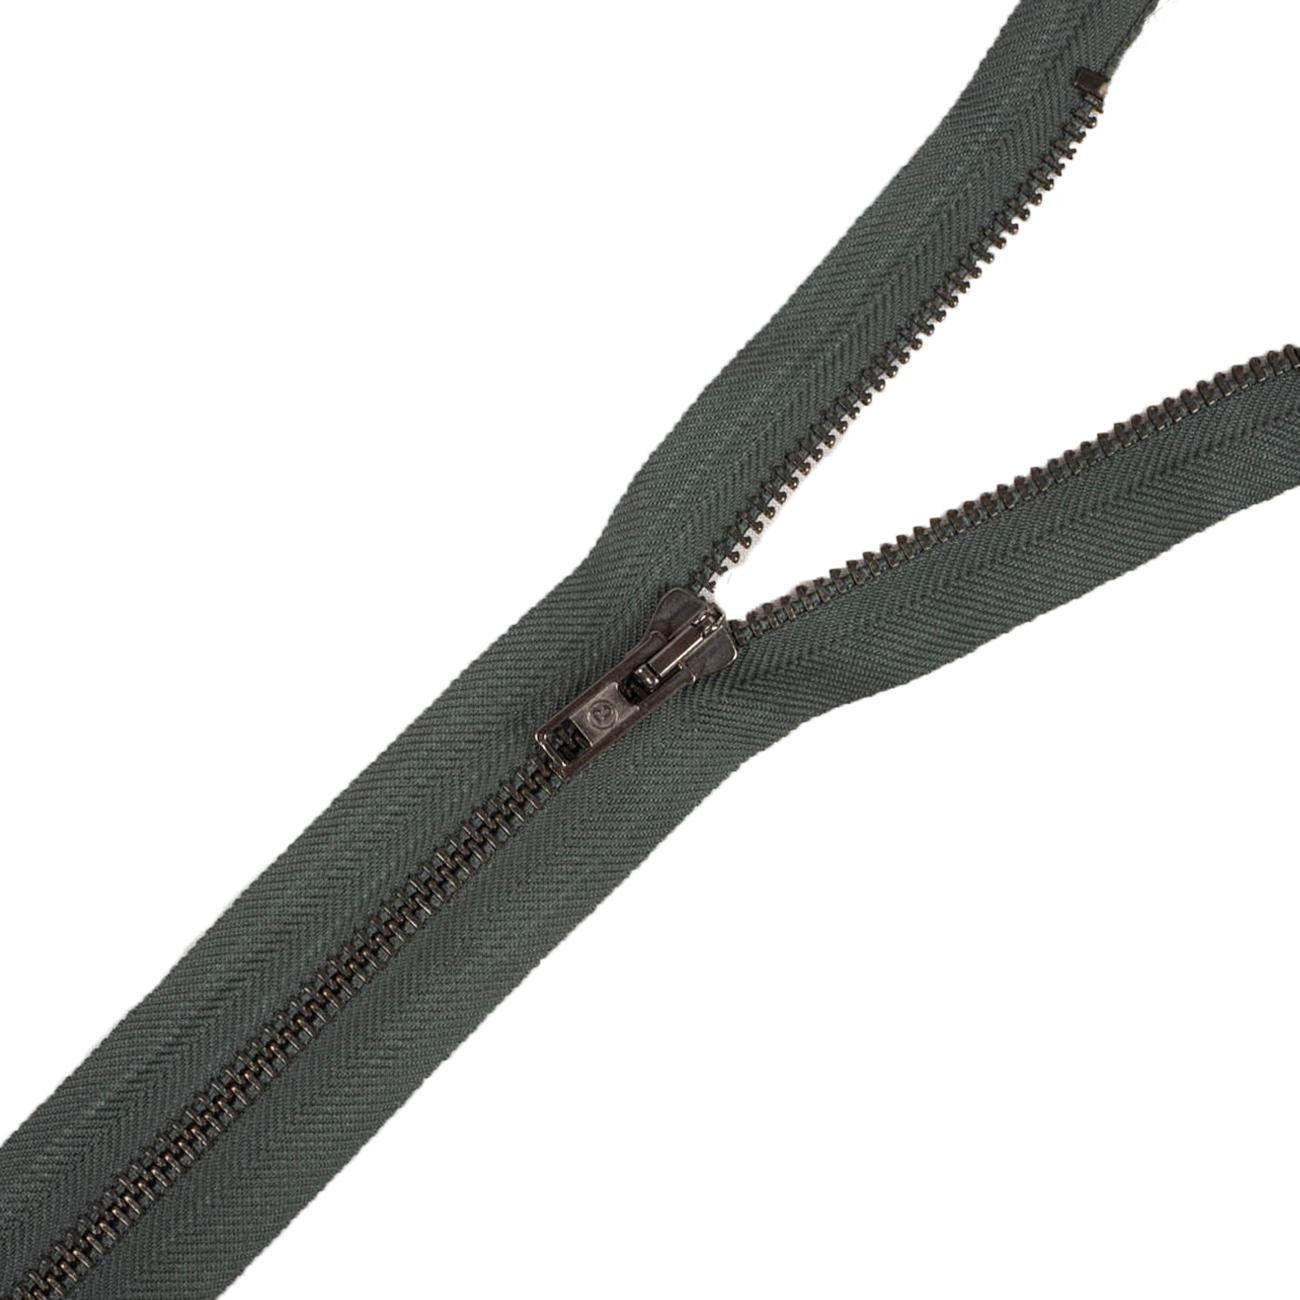 Metal zipper open-end 60cm – dark grey/ black nickel